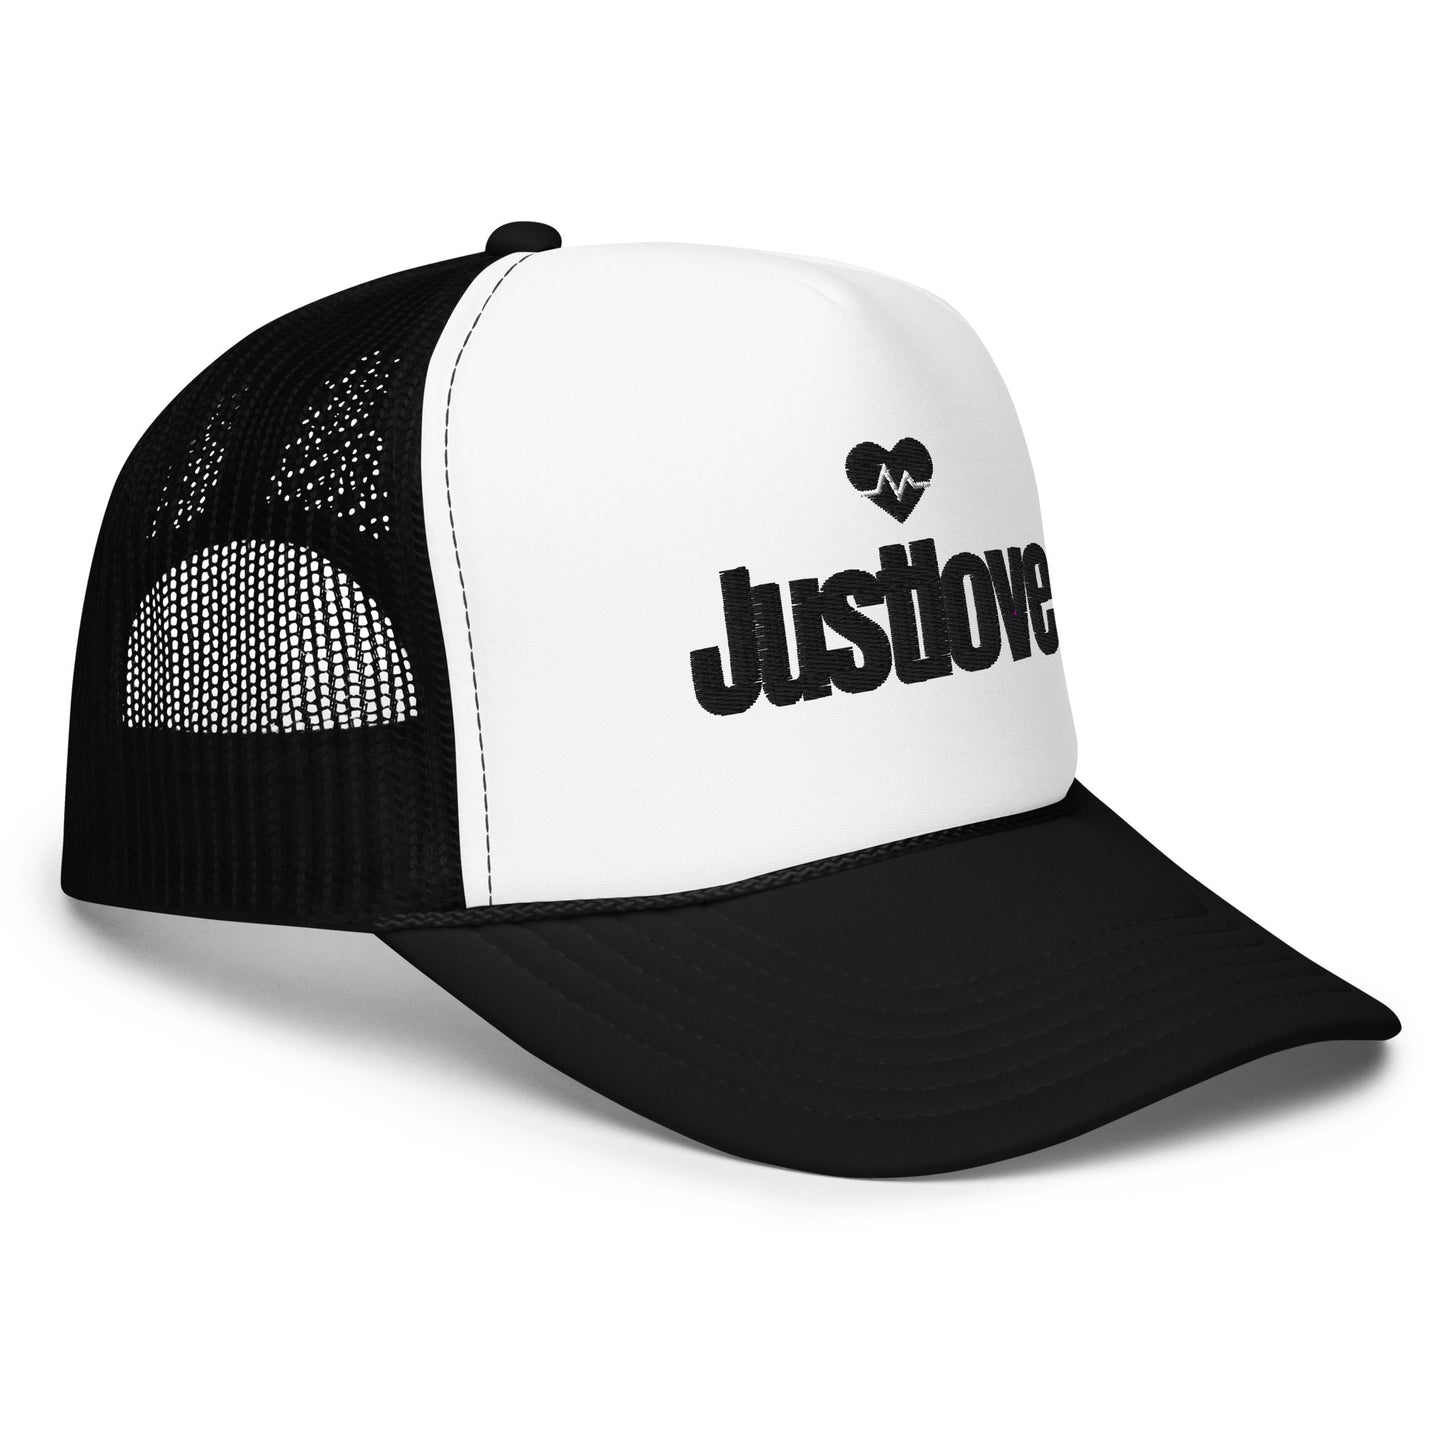 JUSTLOVE Trucker hat